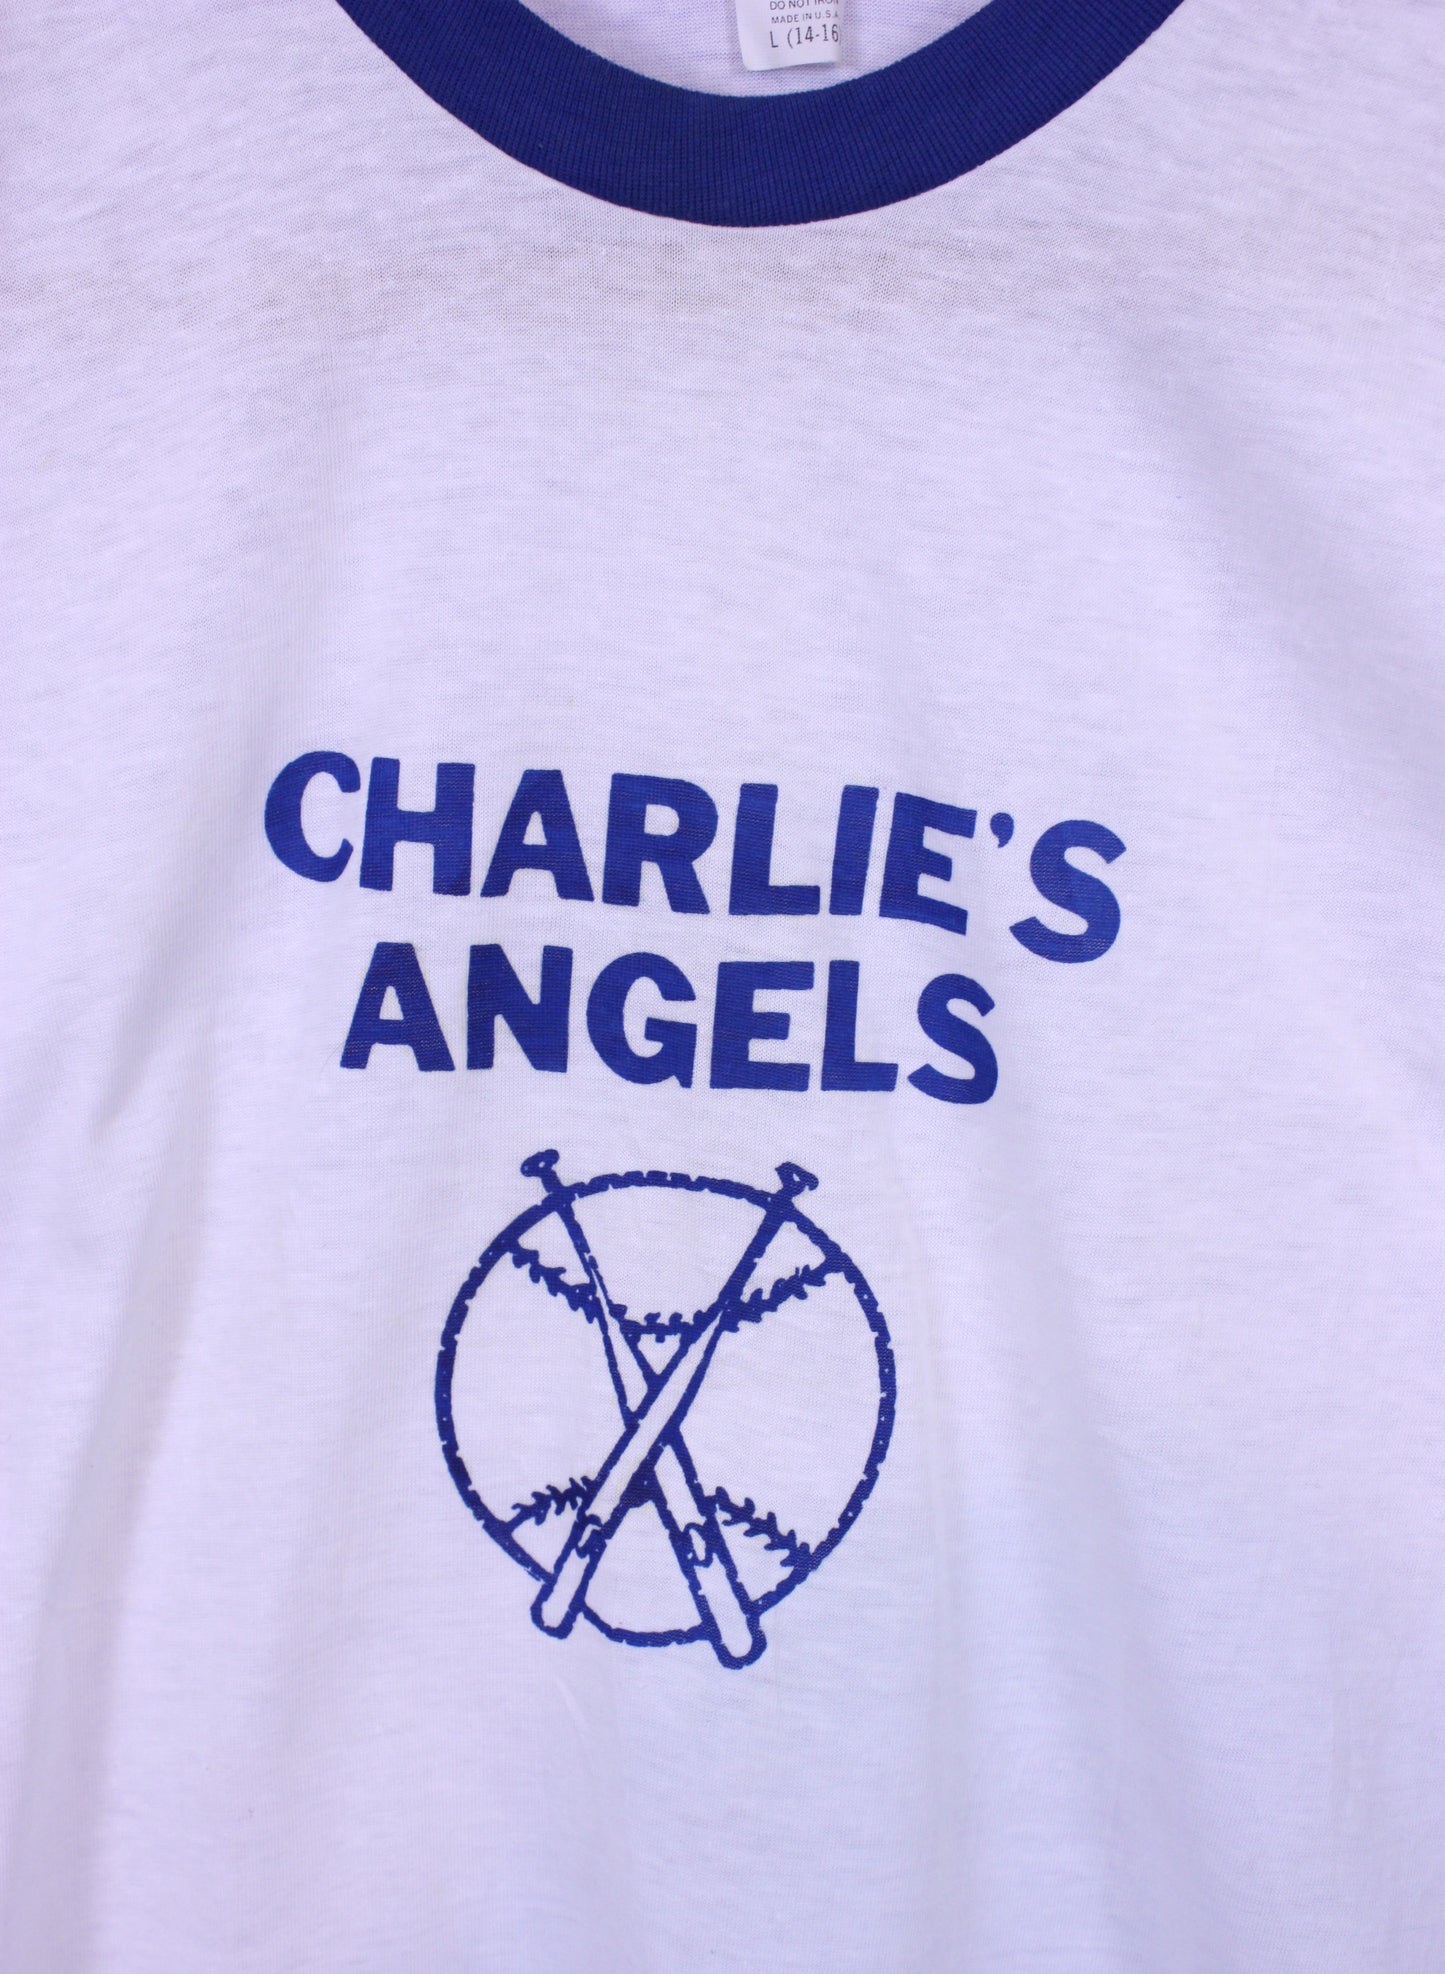 Charlie's Angels Baseball Tee 1970s Ringer